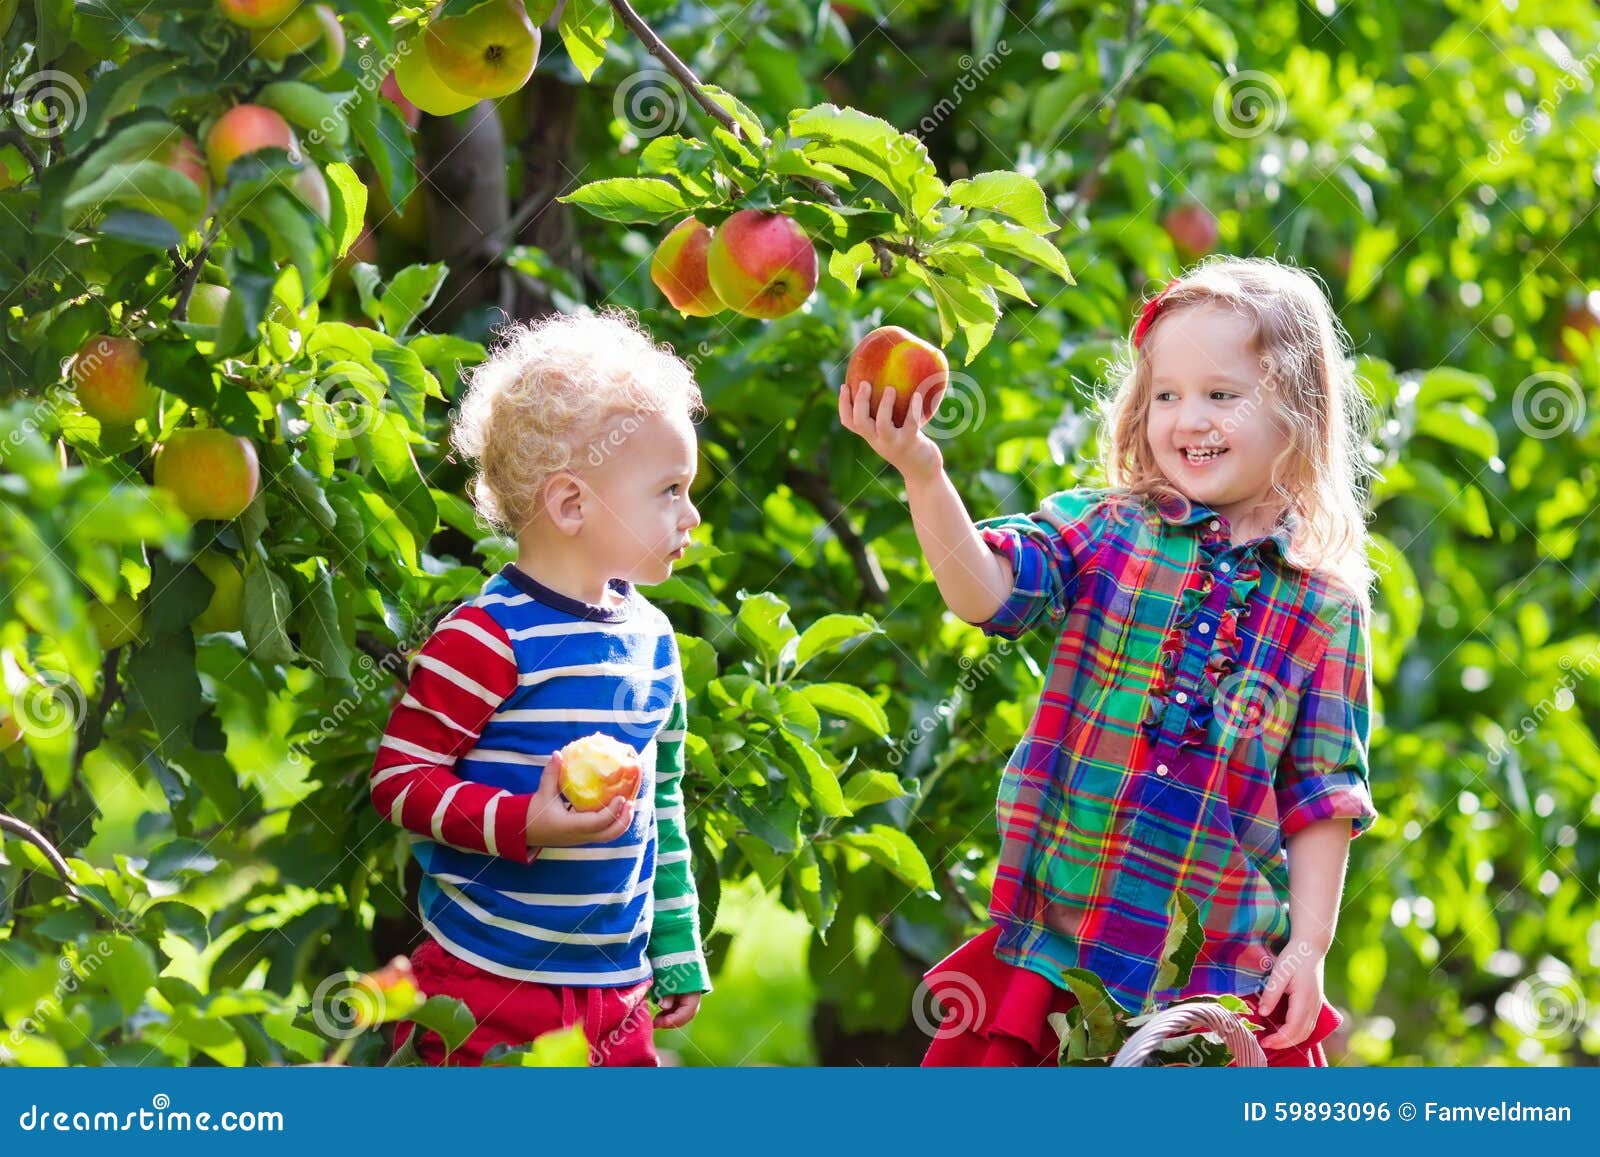 Ребенку можно свежее яблоко. Дети в саду собирают фрукты. Фруктовый сад дети. Девочка собирает урожай в саду. Дети собирают яблоки в саду.